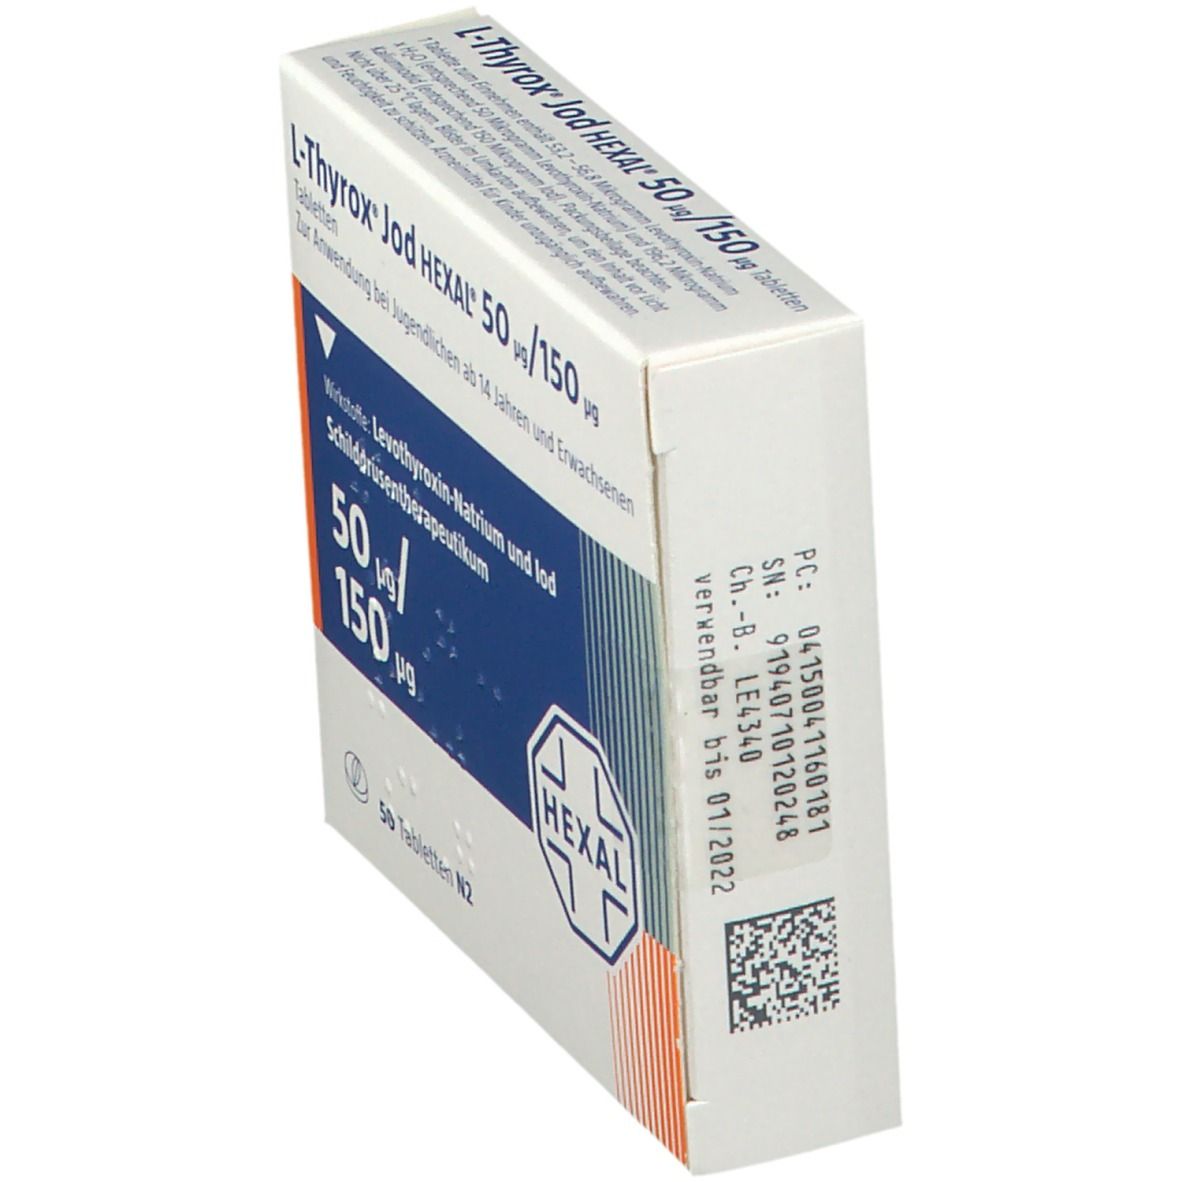 L-Thyrox® Jod HEXAL® 50 µg/150 µg